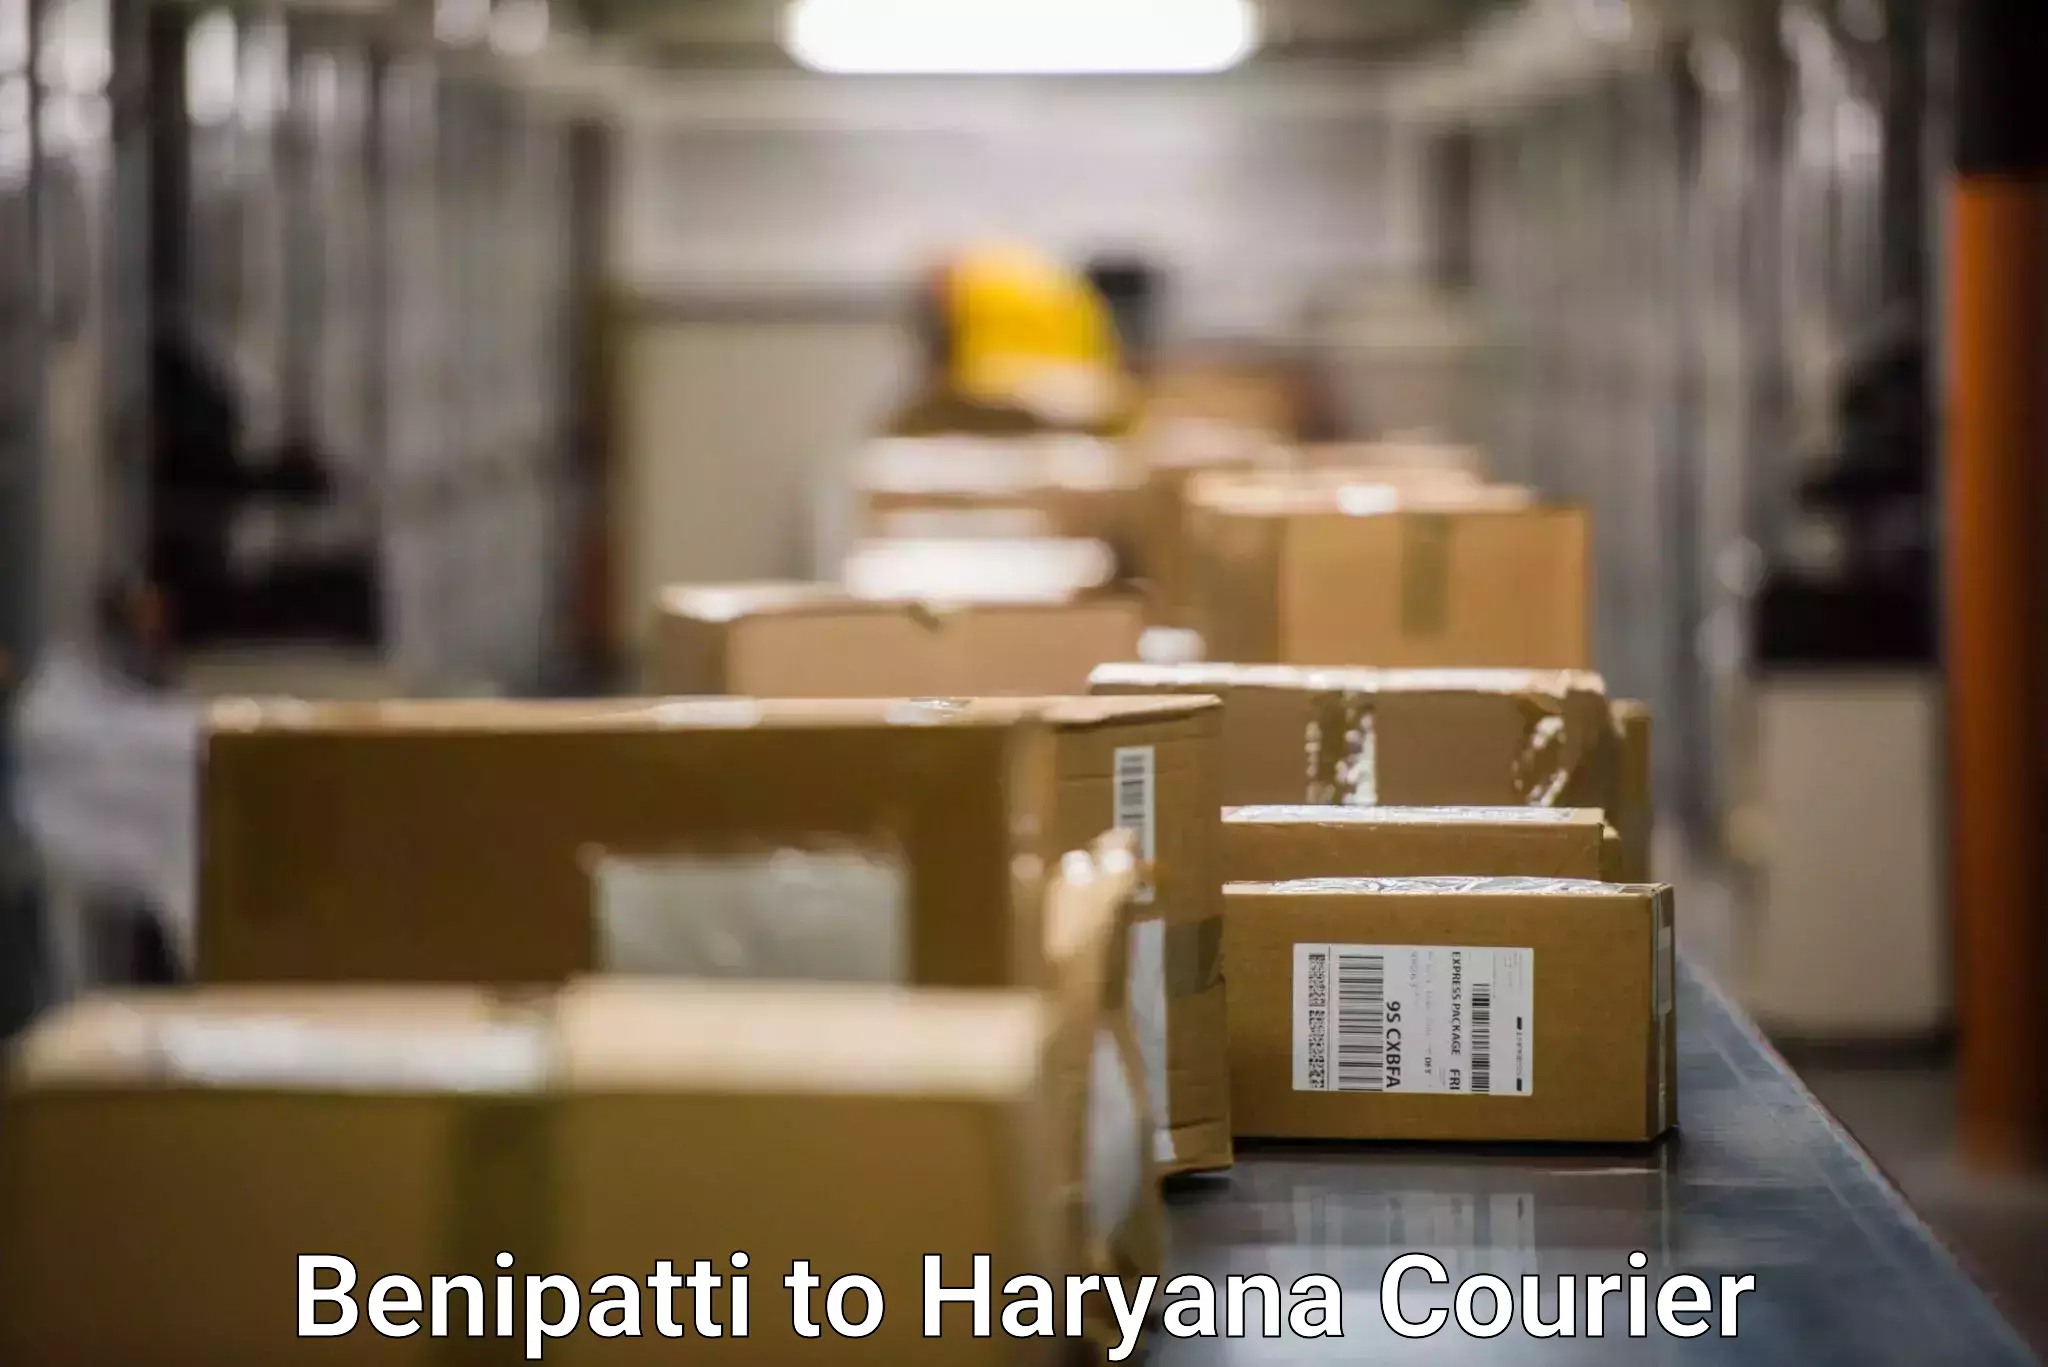 Local delivery service Benipatti to Sonipat